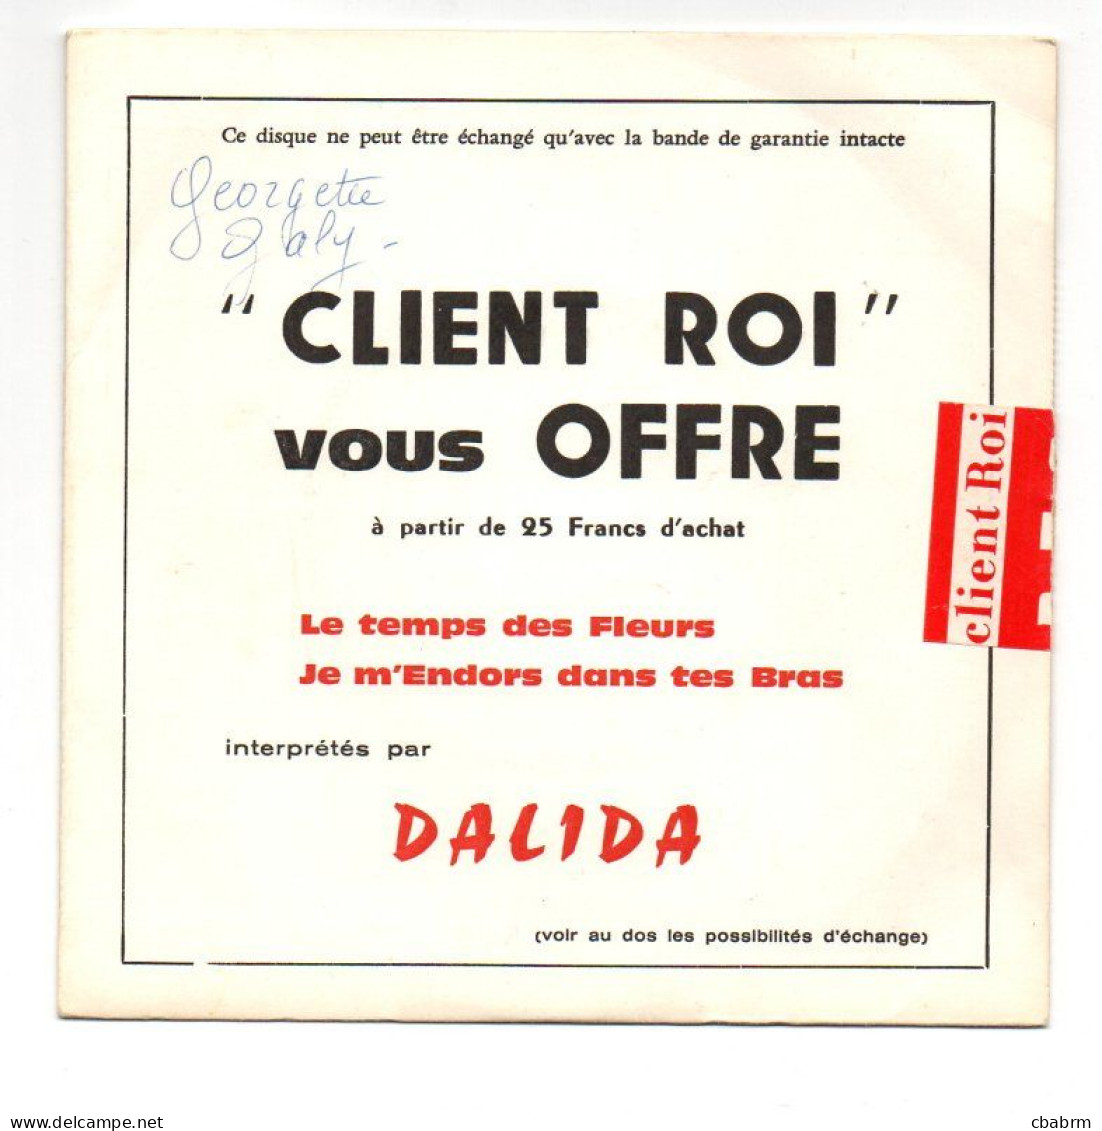 SP 45 TOURS DALIDA LE TEMPS DES FLEURS CLIENT ROI VOUS OFFRE 1968 BARCLAY 60974 - Rock